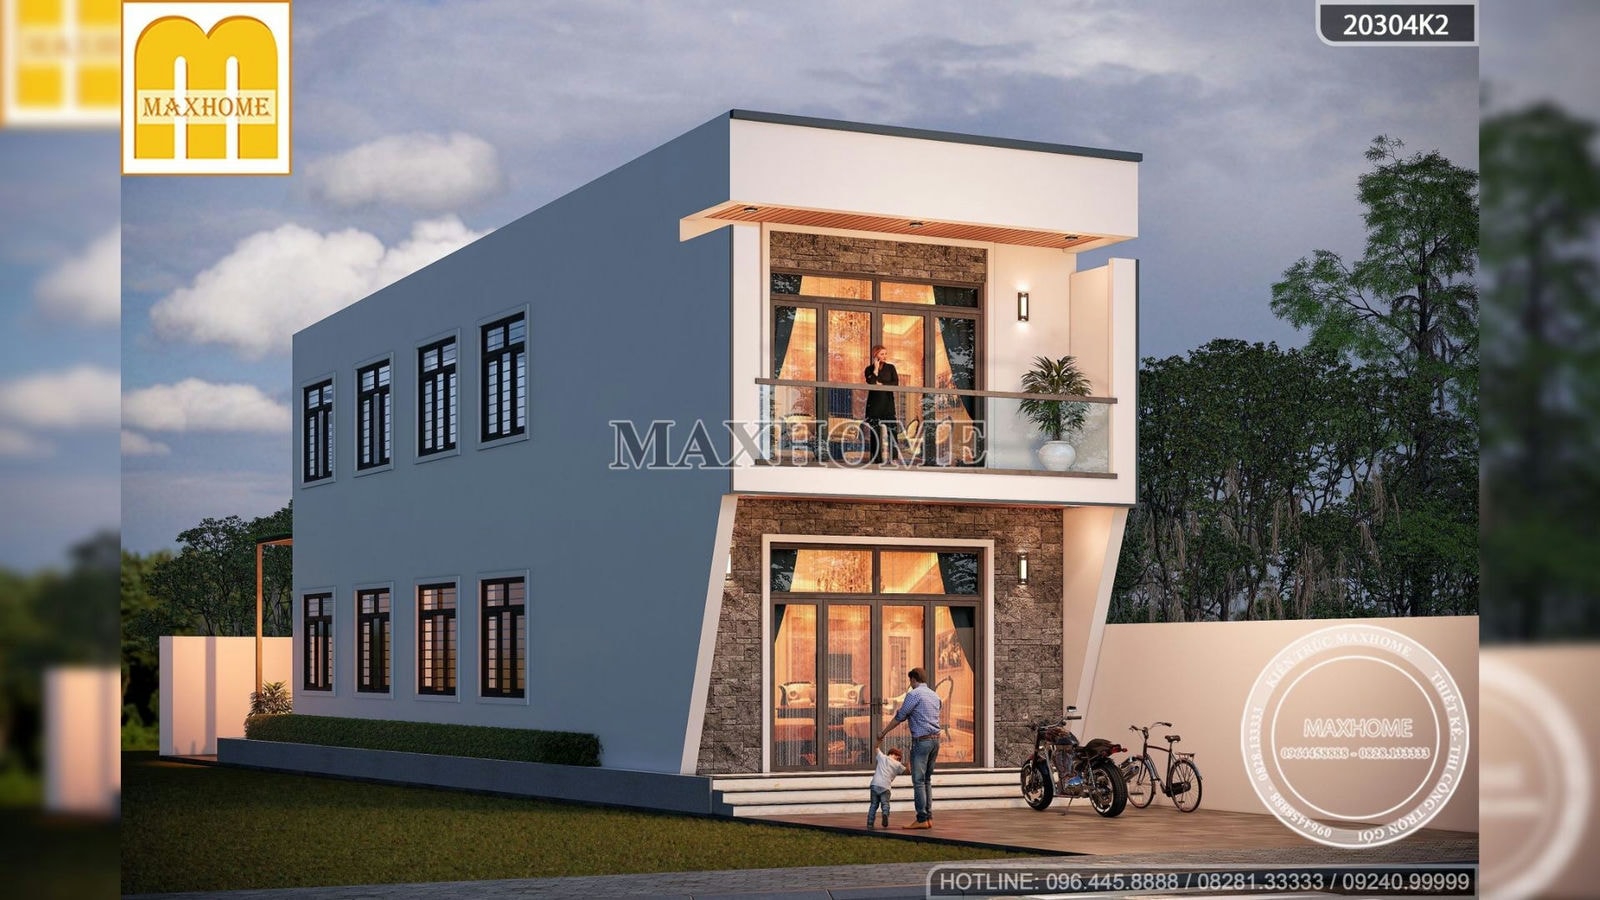 Maxhome thiết kế nhà kinh doanh mặt tiền 6m tại Bắc Giang | MH01836